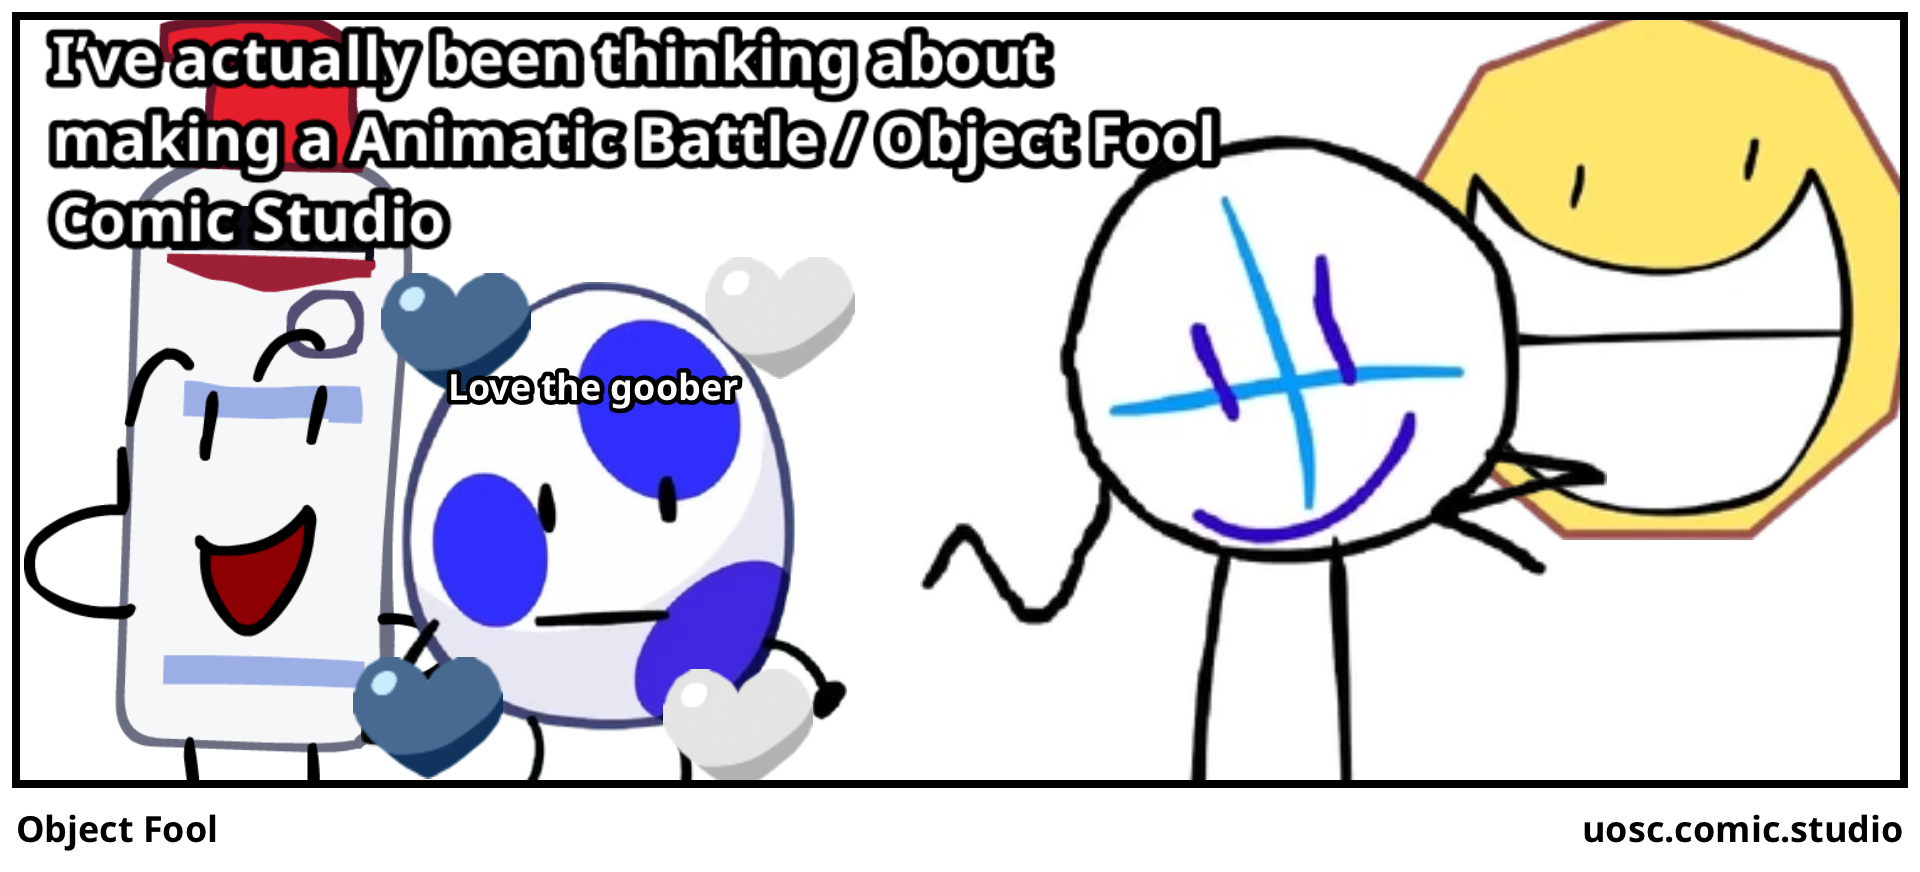 Object Fool